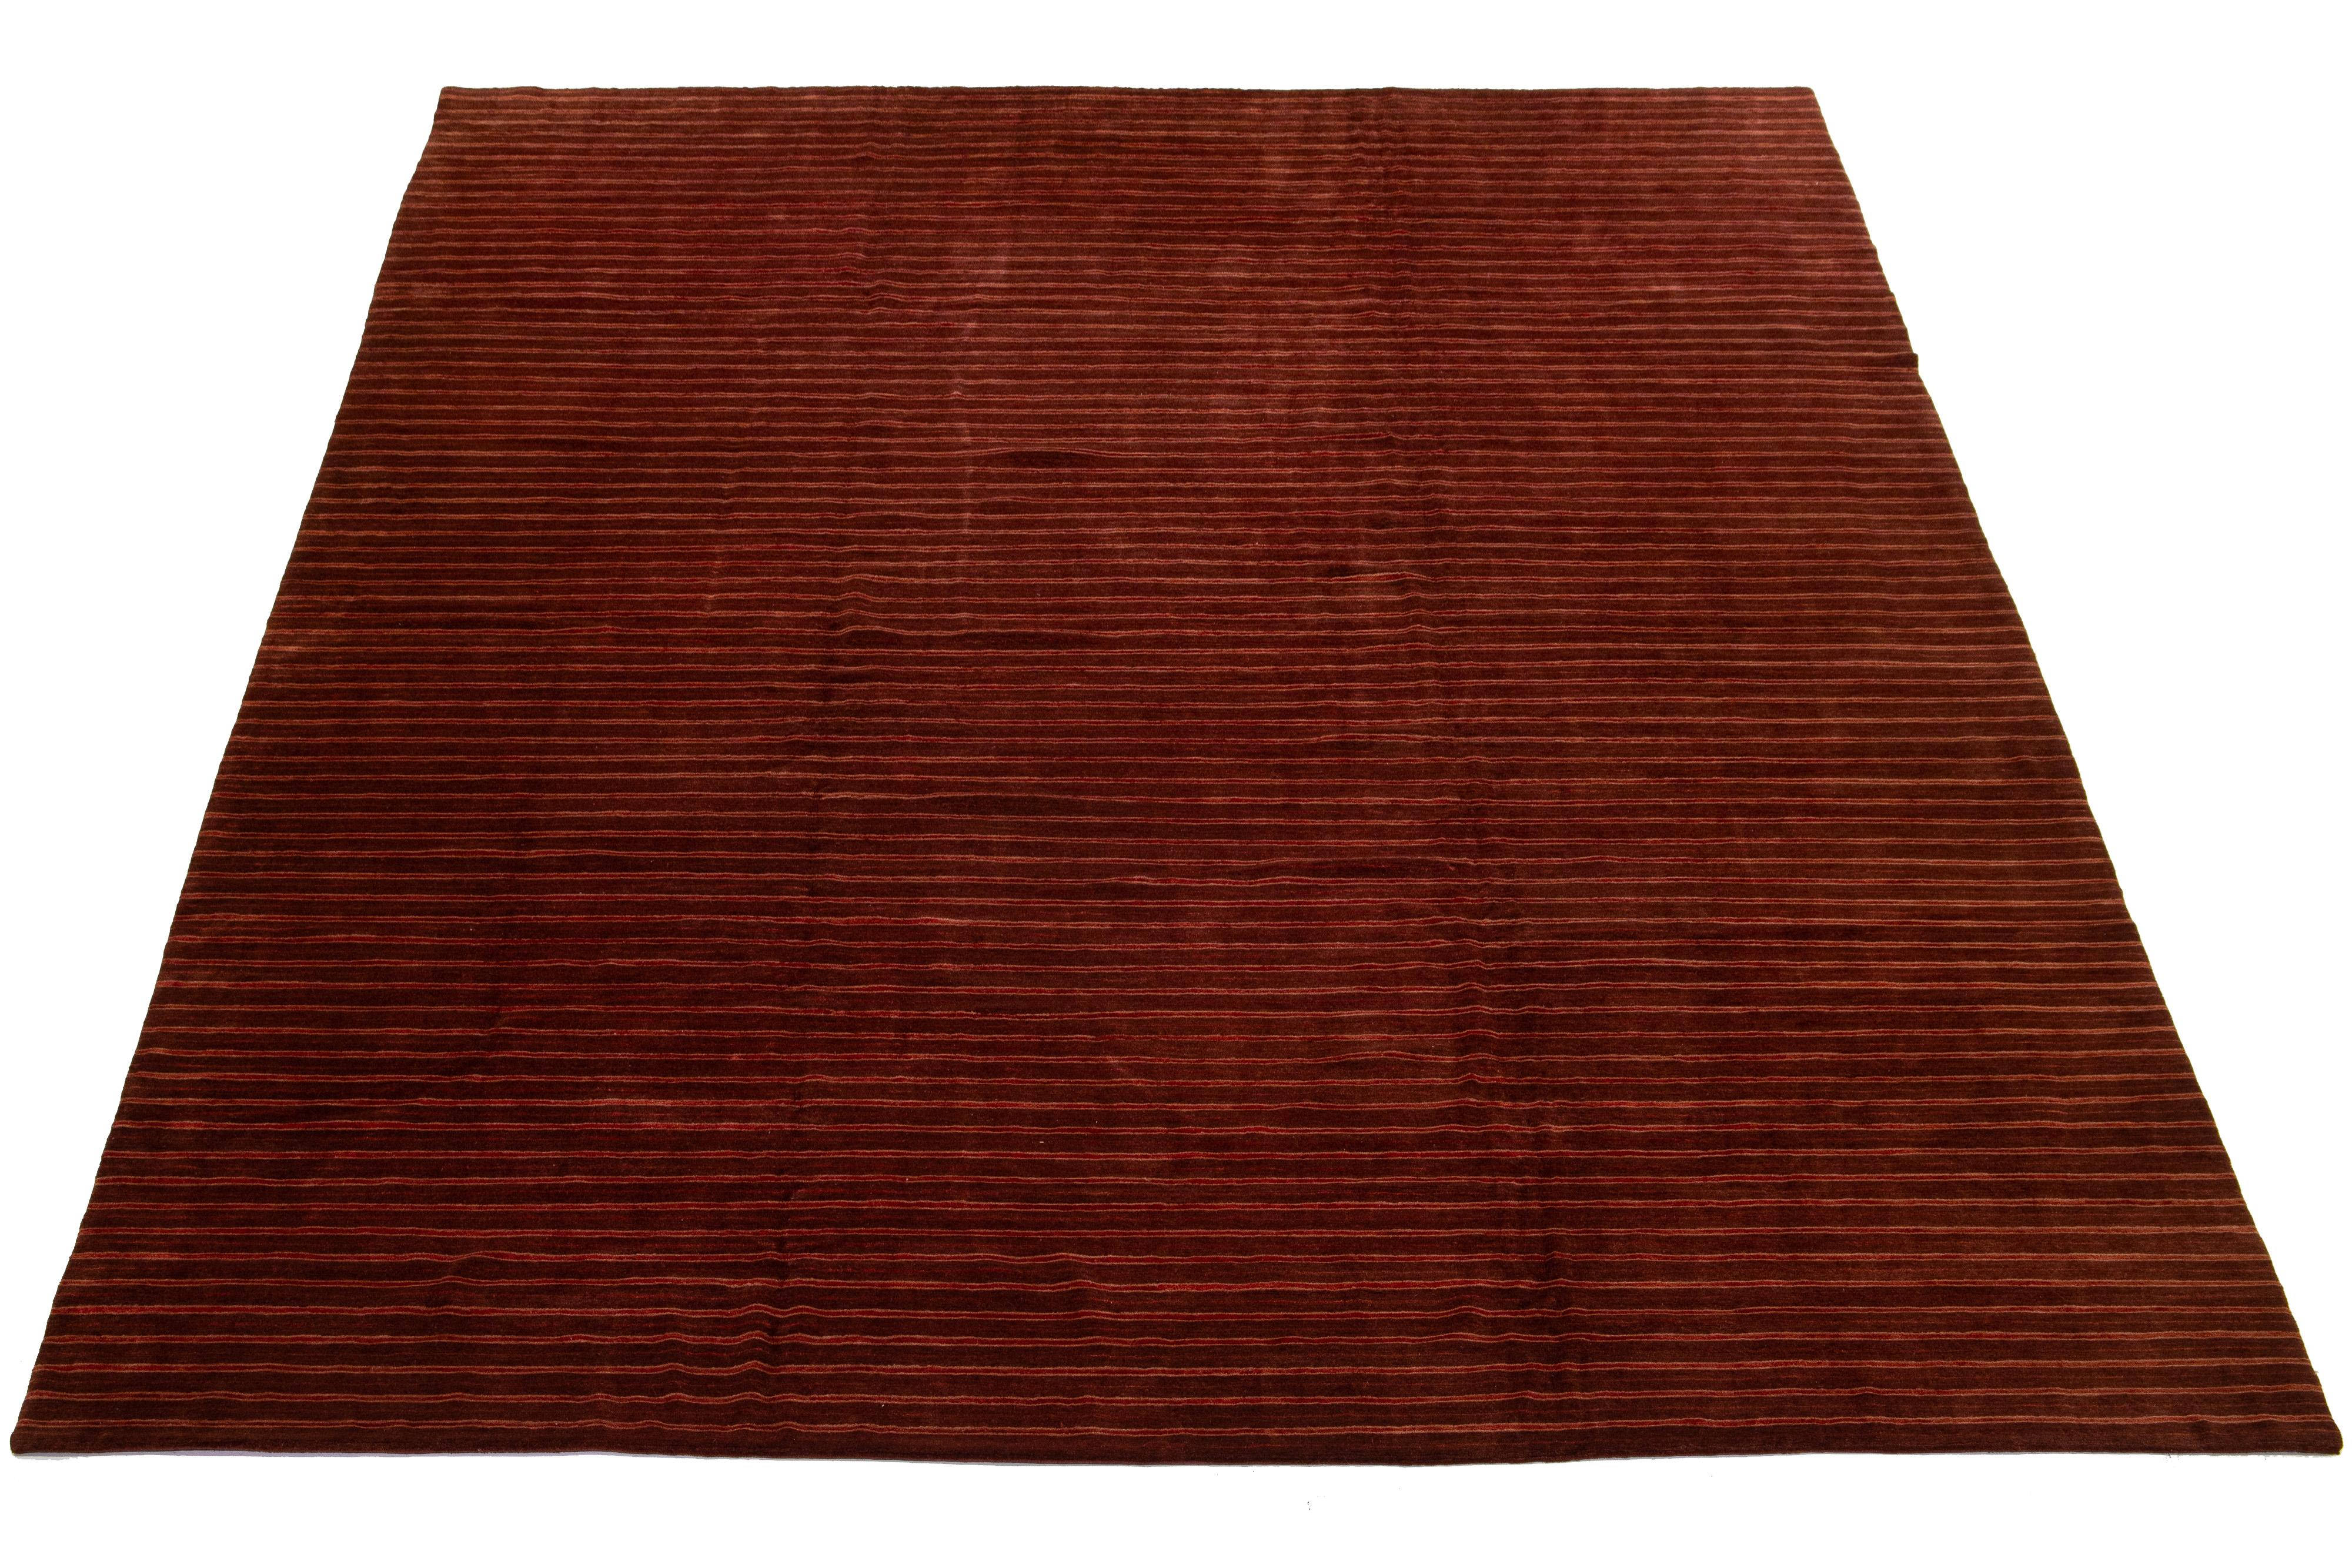 Dieser moderne tibetische Teppich hat einen burgunderroten Hintergrund mit rostfarbenen Akzenten, wodurch ein schickes und raffiniertes Streifendesign entsteht, das die Essenz des Modernismus im 21. Jahrhundert widerspiegelt.

Dieser Teppich misst